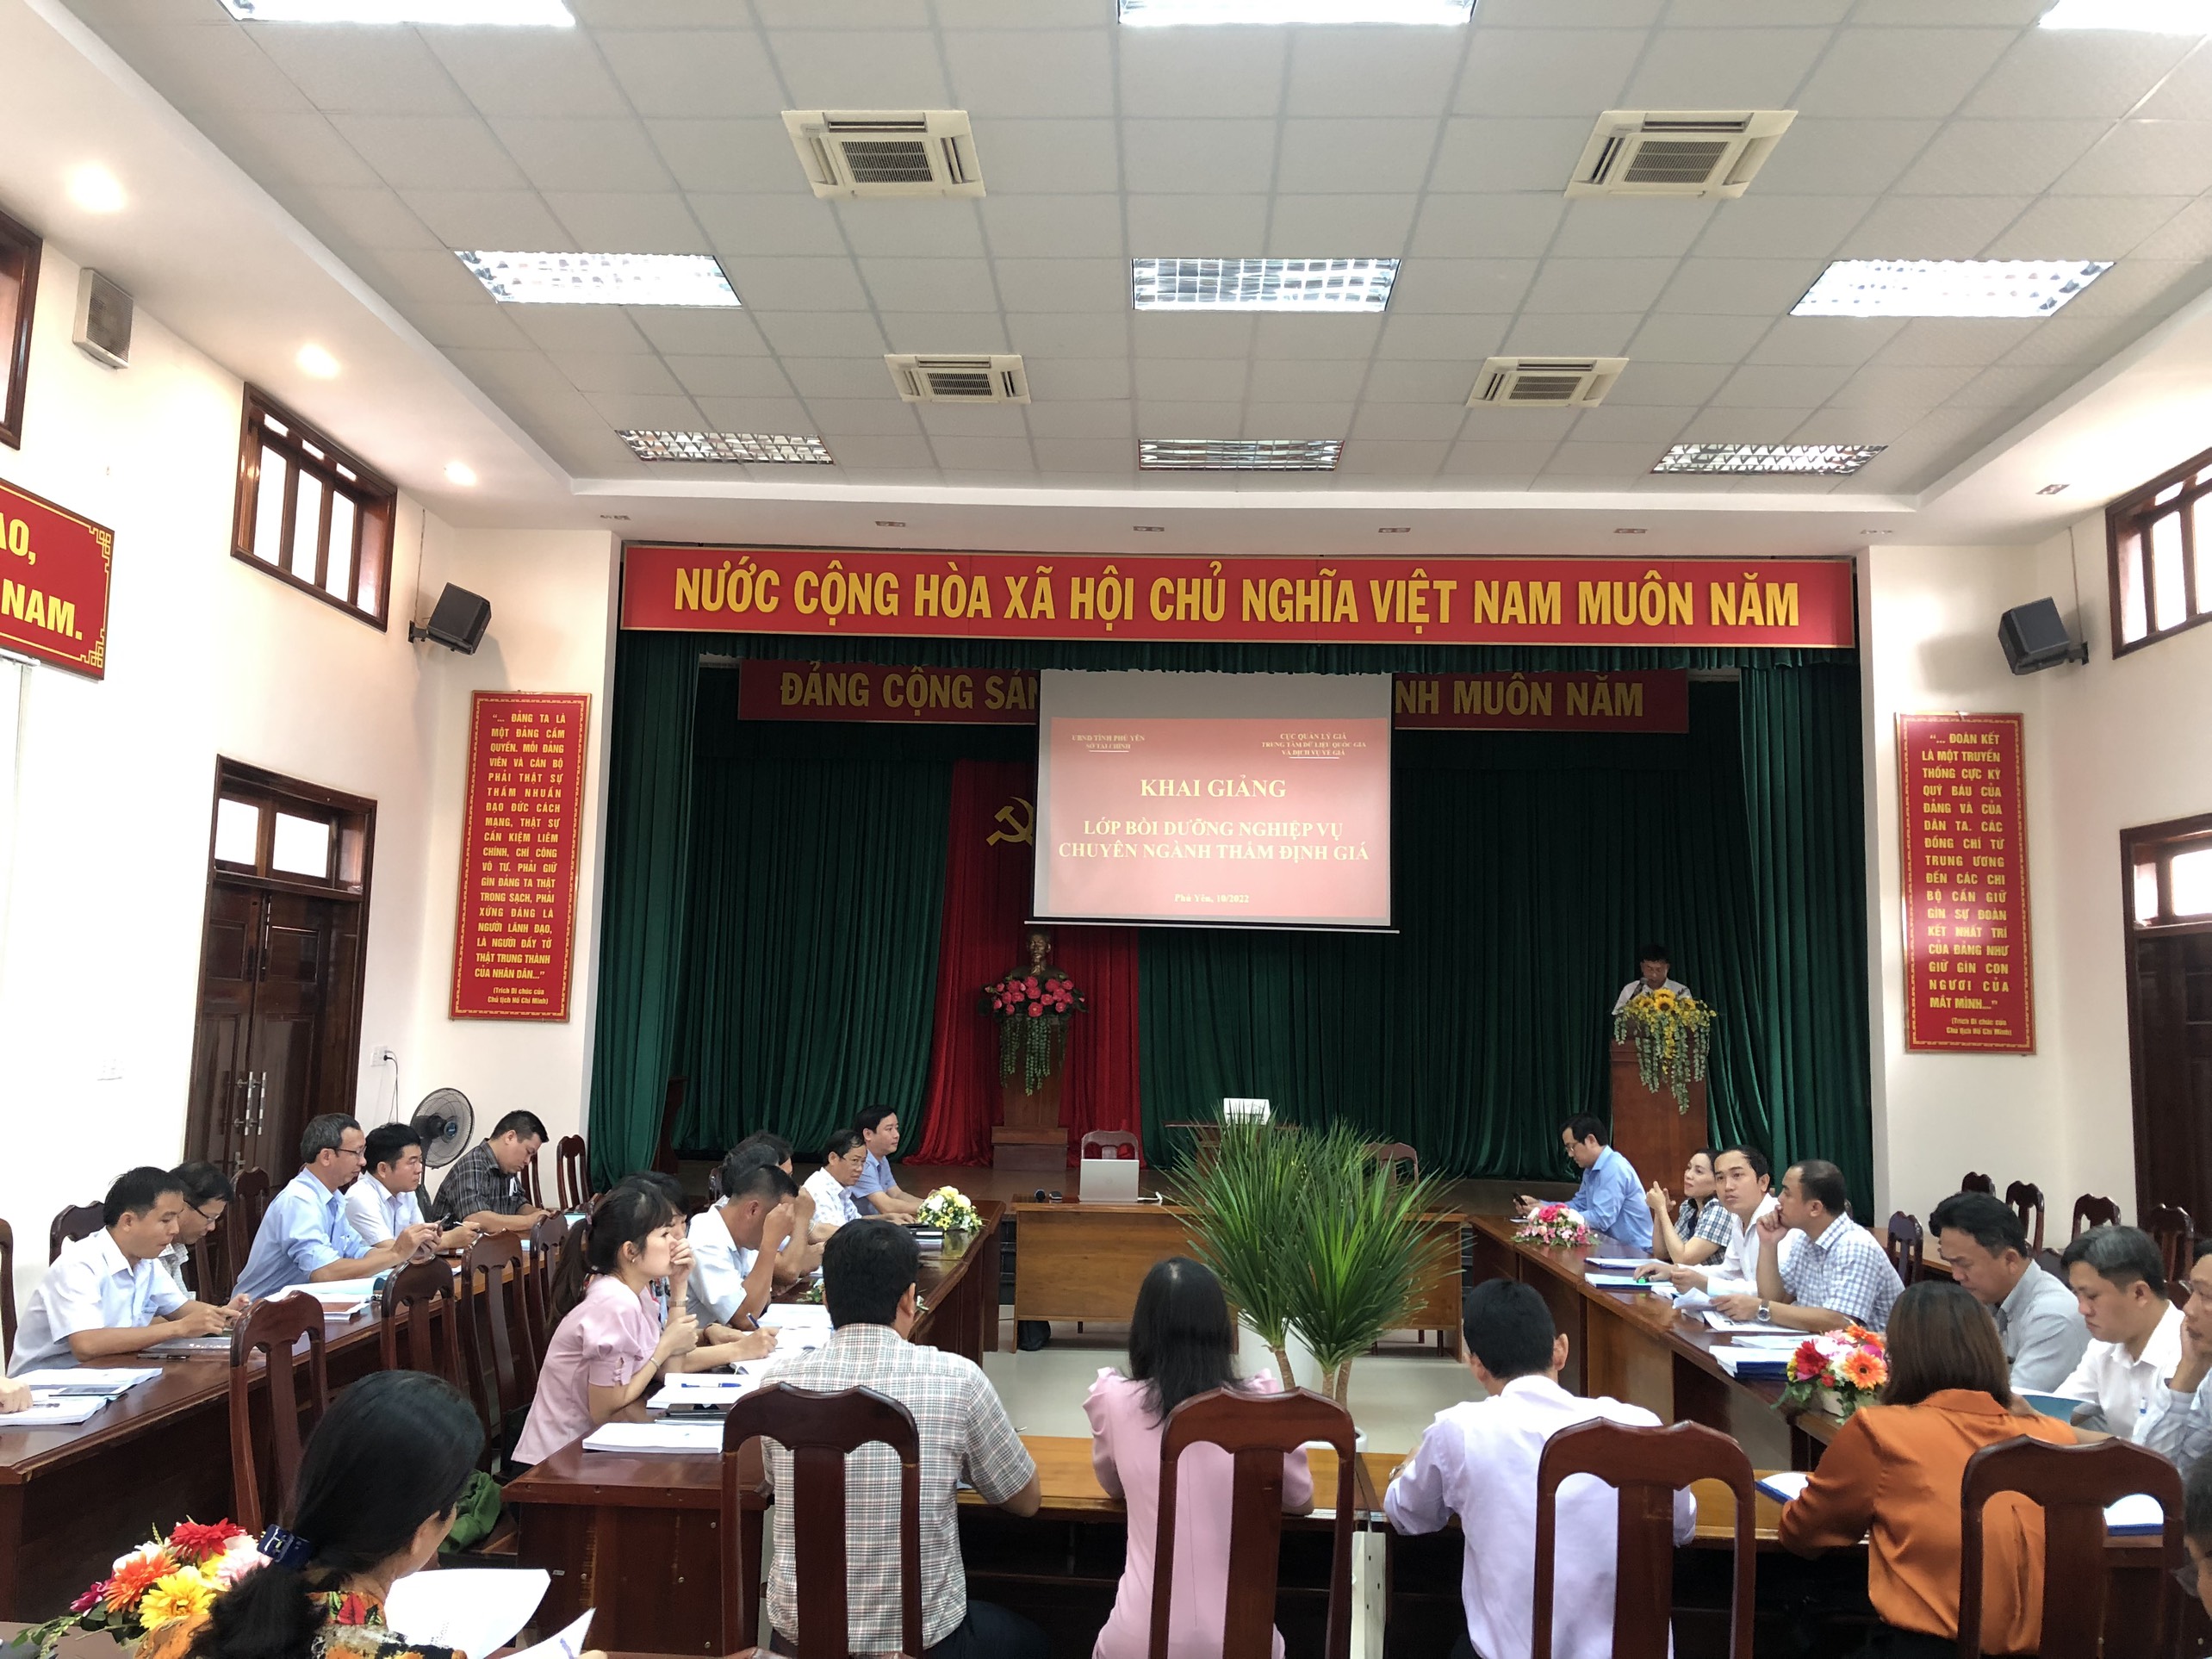 KHAI GIẢNG lớp Bồi dưỡng nghiệp vụ chuyên ngành thẩm định giá tại tỉnh Phú Yên